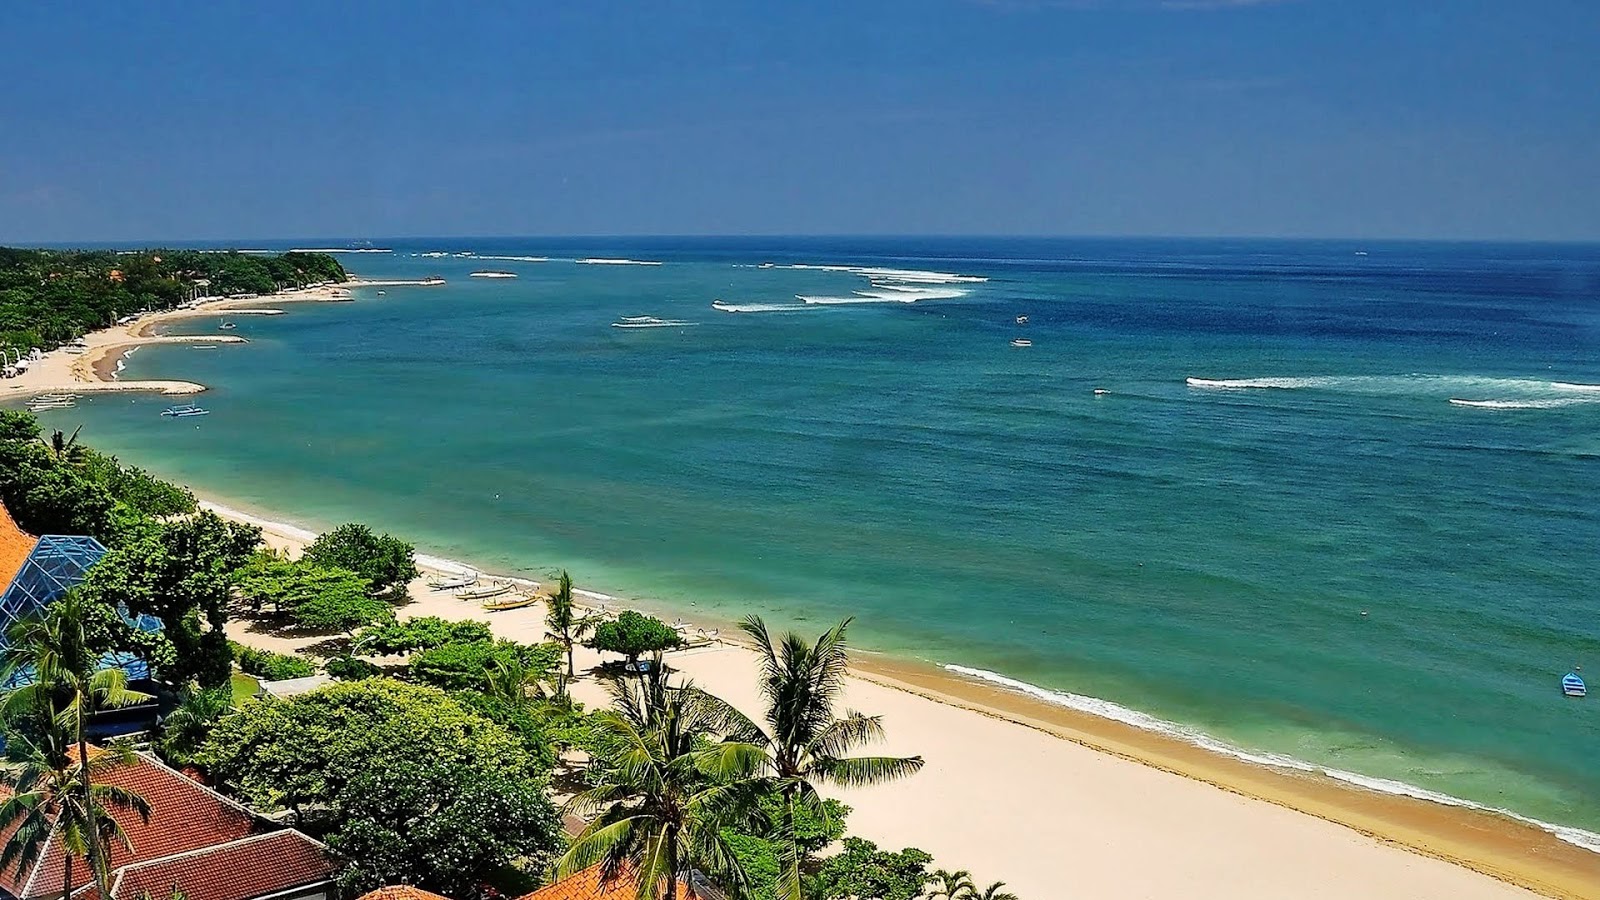  Pantai Kuta Bali Menawan dengan Hamparan Keindahan 